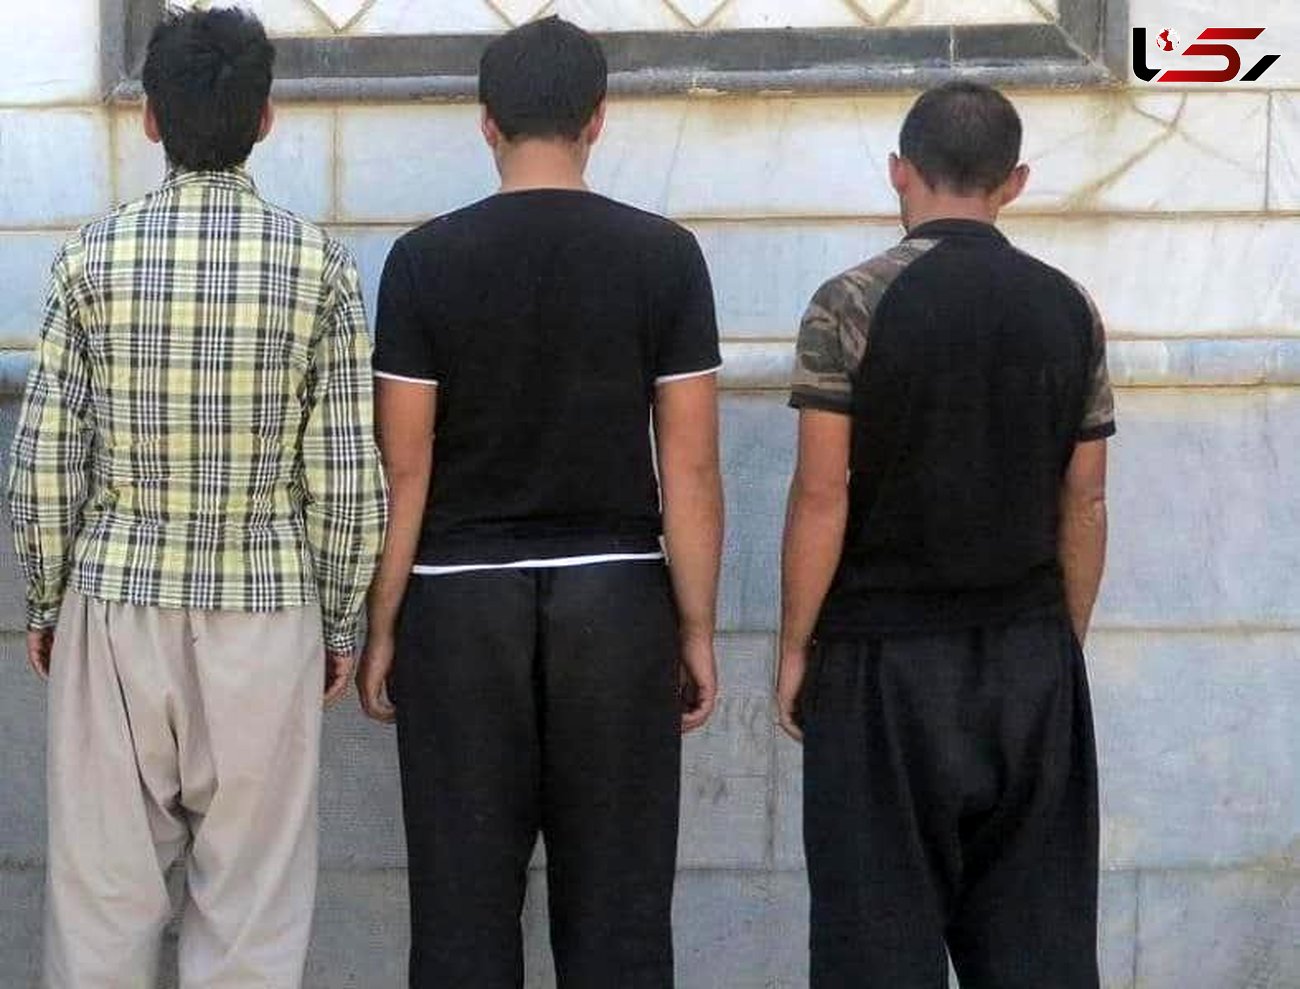 عوامل نزاع و تیراندازی در کرمانشاه دستگیر شدند